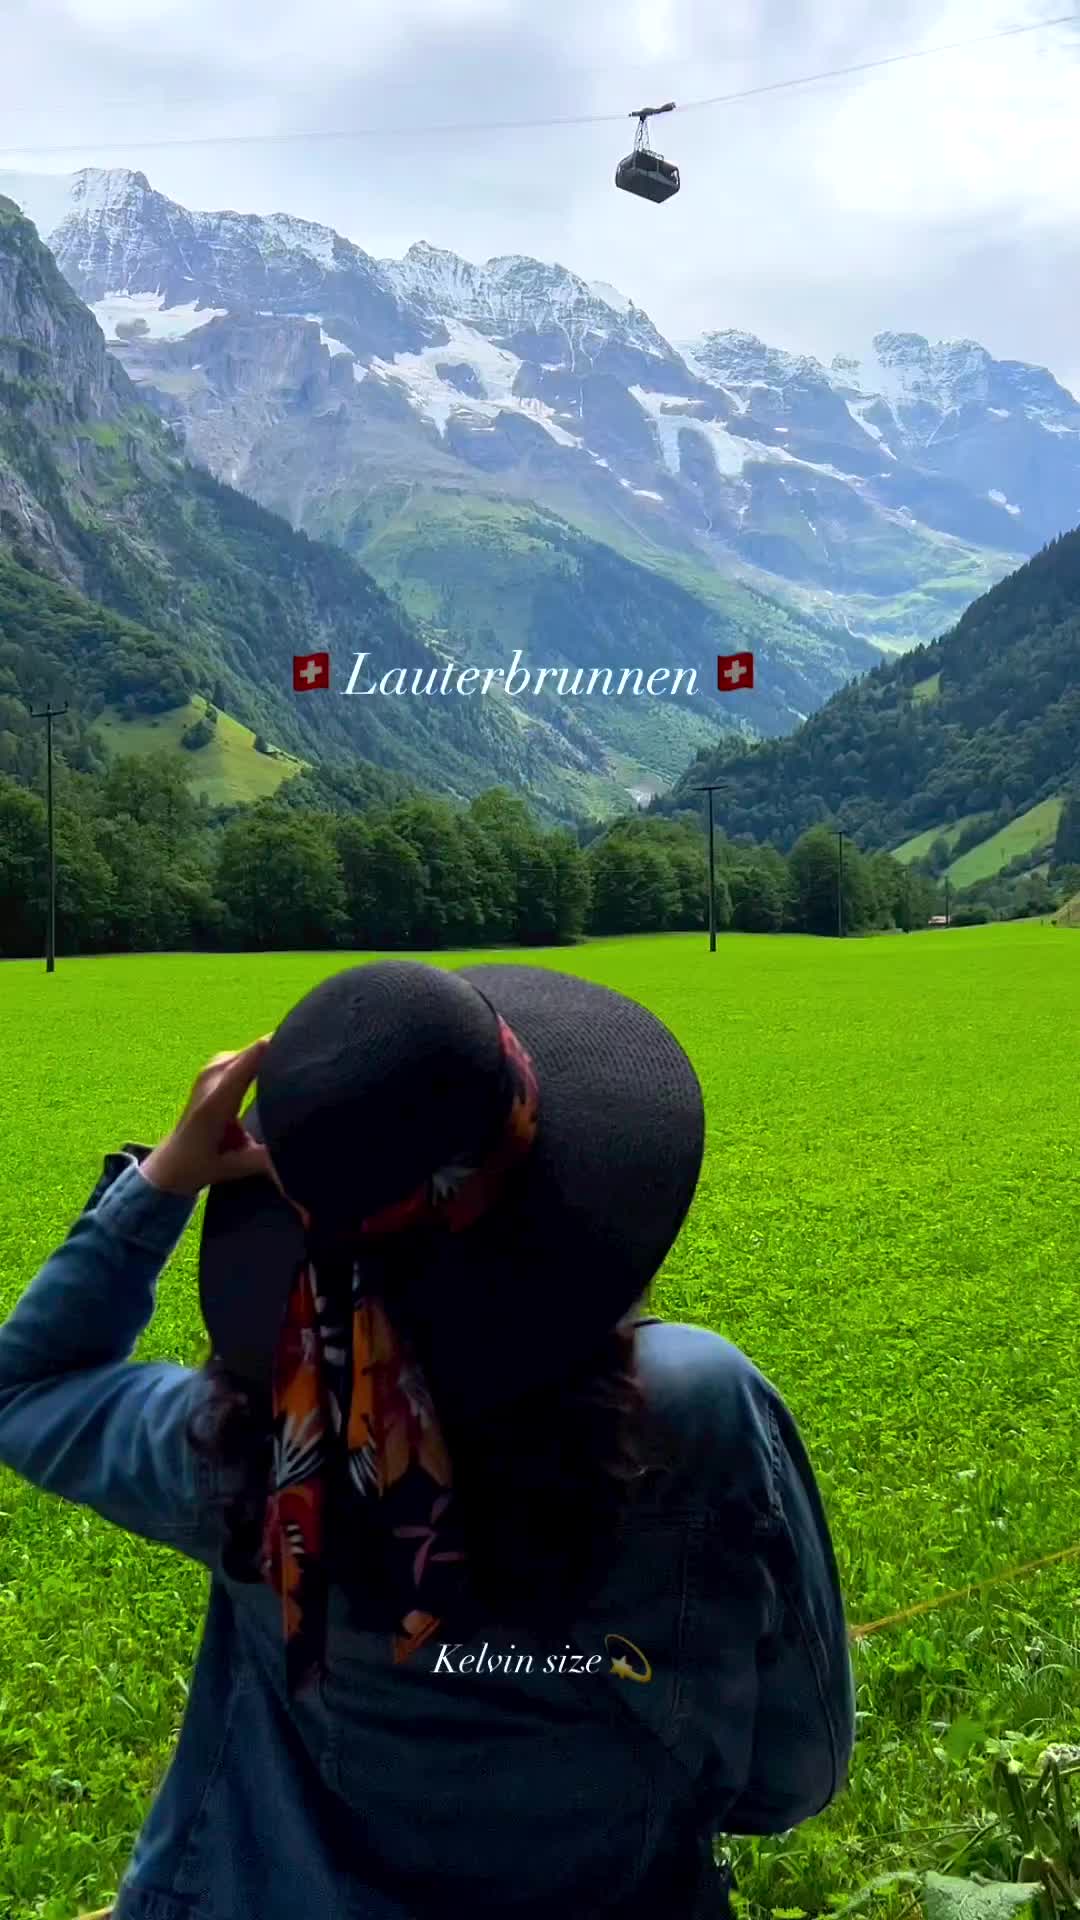 Lauterbrunnen's Unique Scenic Beauty in Switzerland